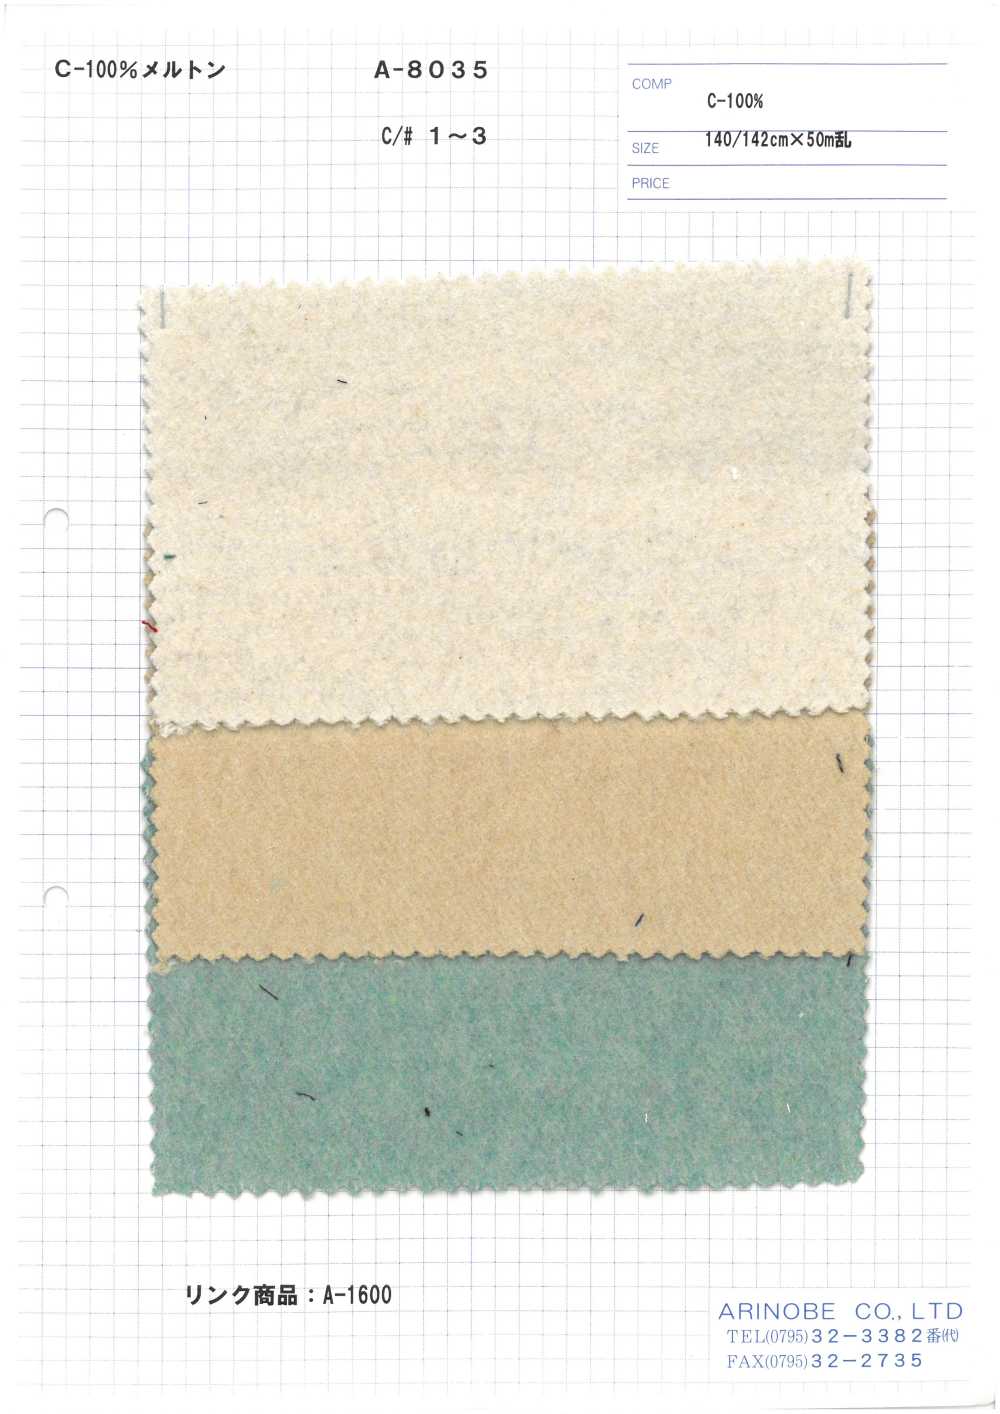 A-8035 Cotton Melton (100% Cotton)[Textile / Fabric] ARINOBE CO., LTD.